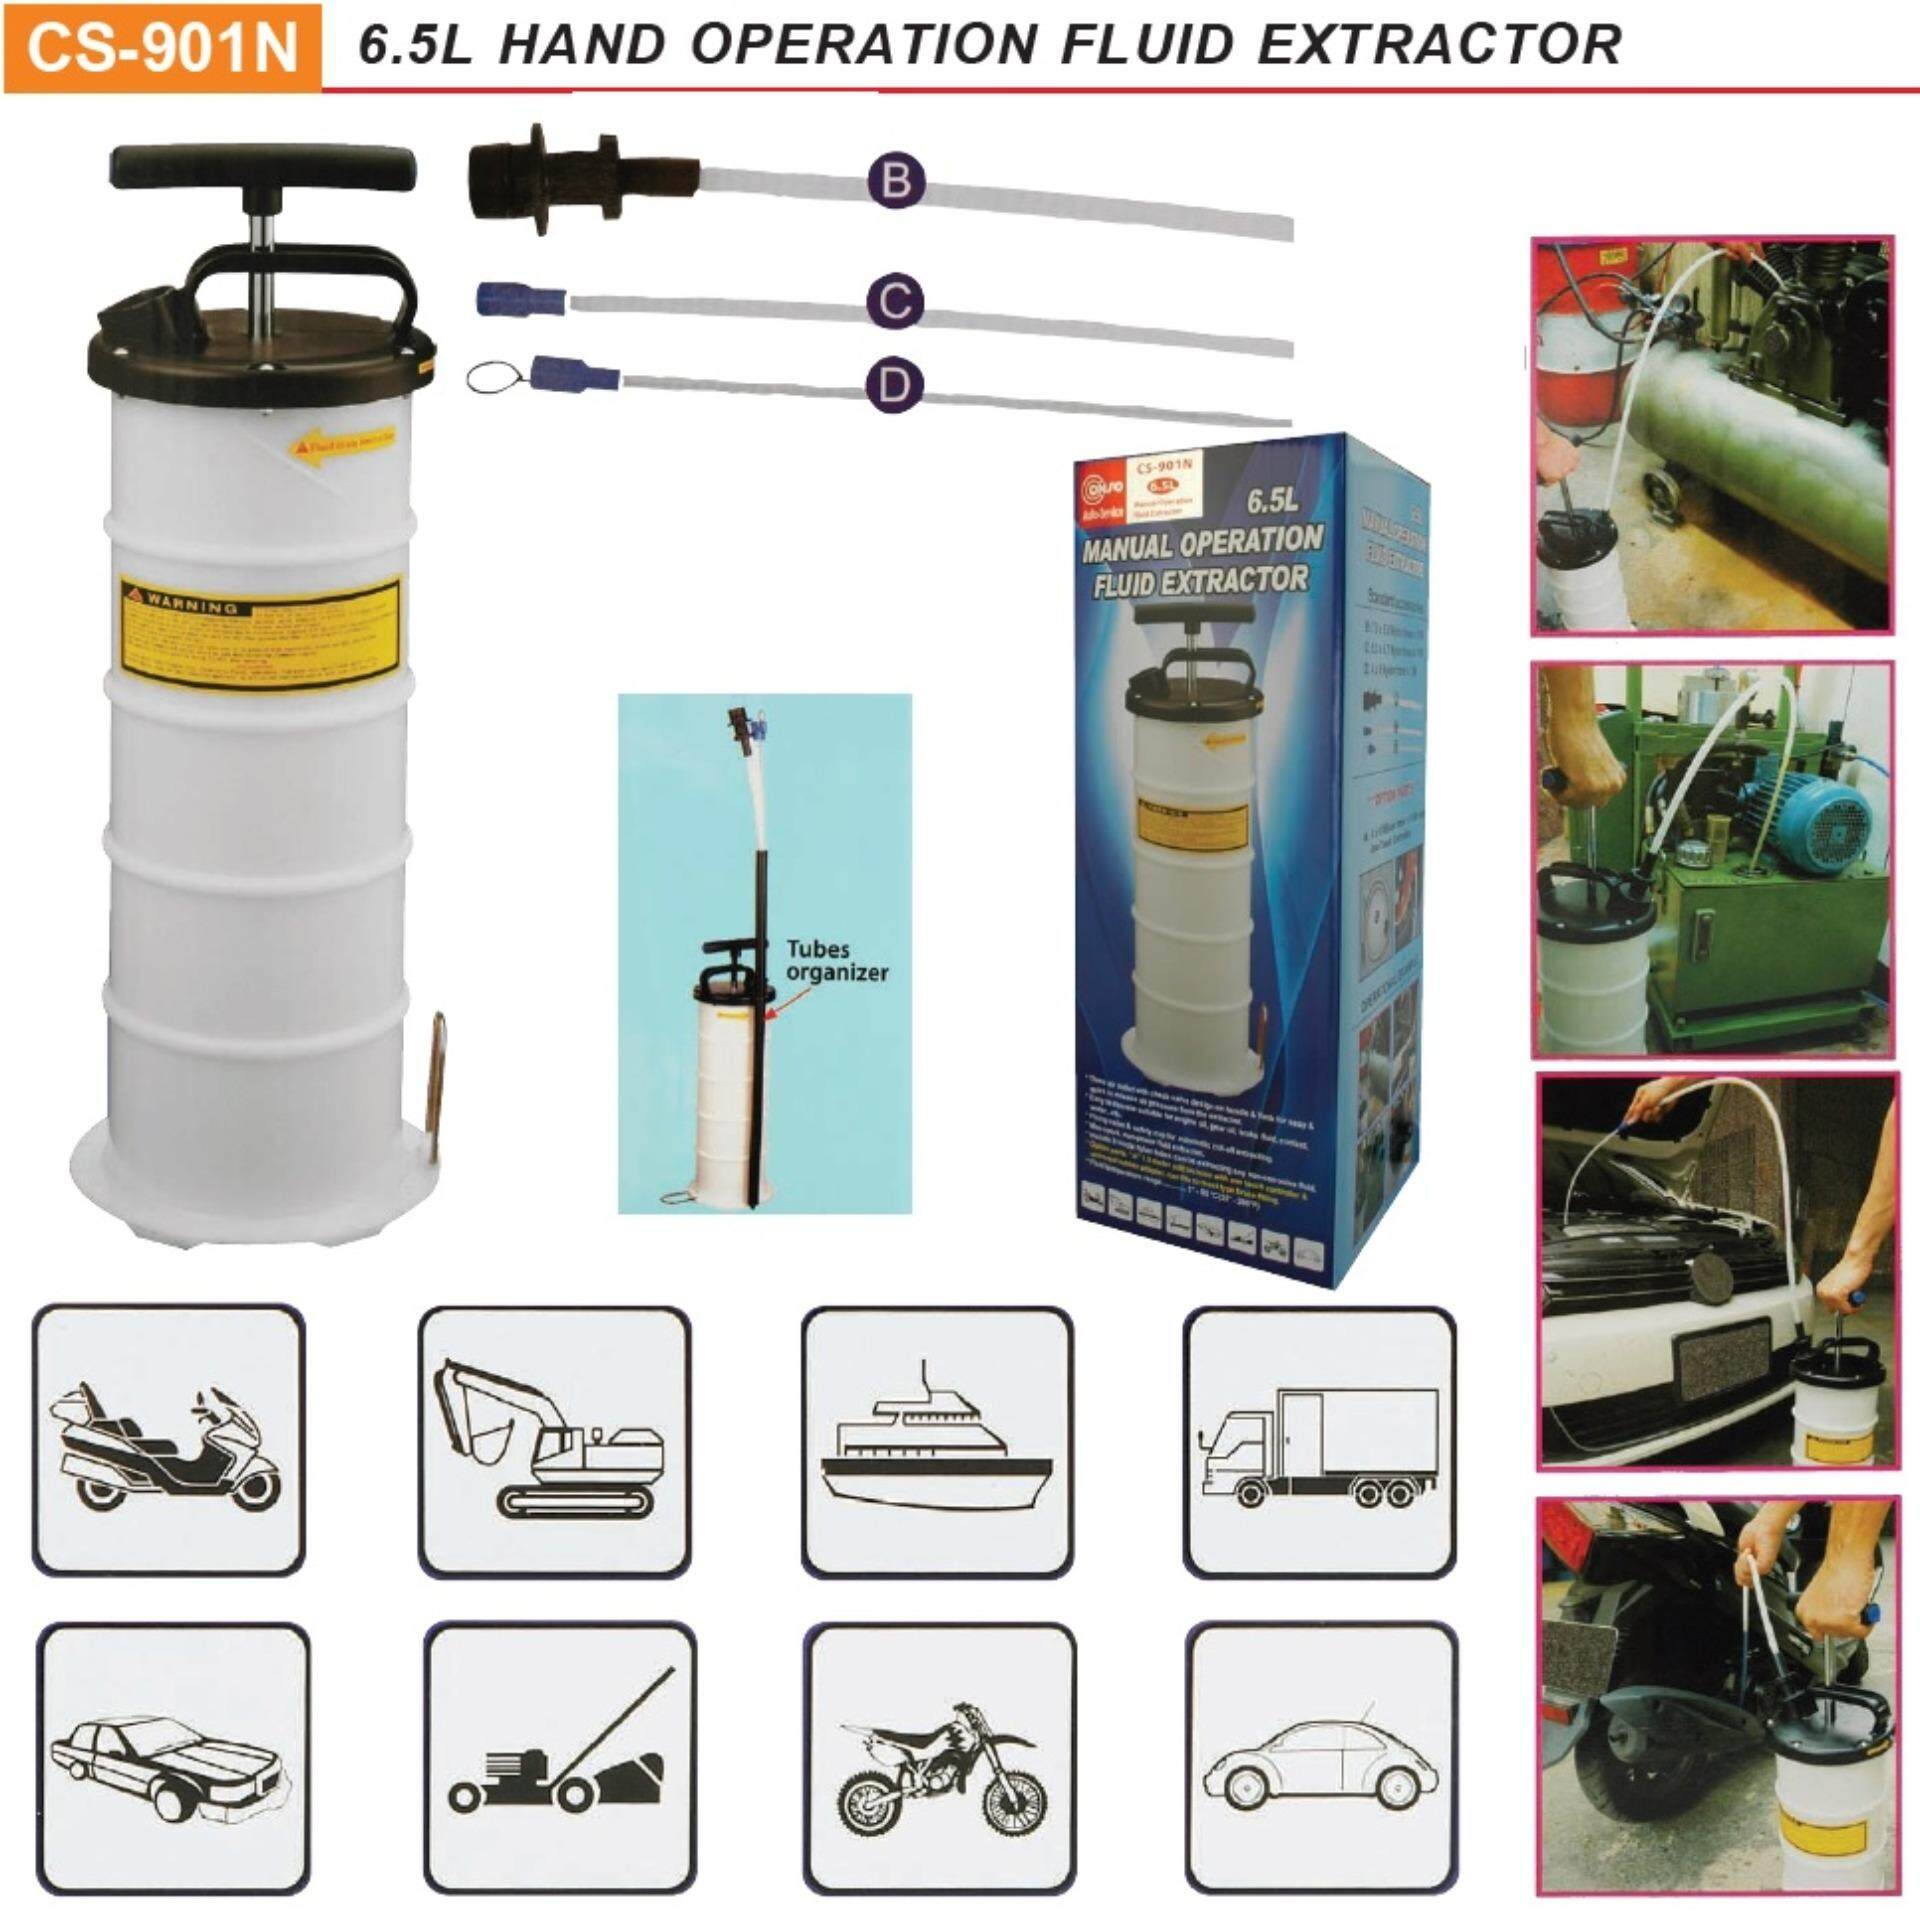 6.5 ลิตร ถังดูดน้ำมันเครื่องแบบใช้มือ ปั้มถ่ายน้ำมันแบบโยก รุ่น CS-901N Hand Fluid Extractor